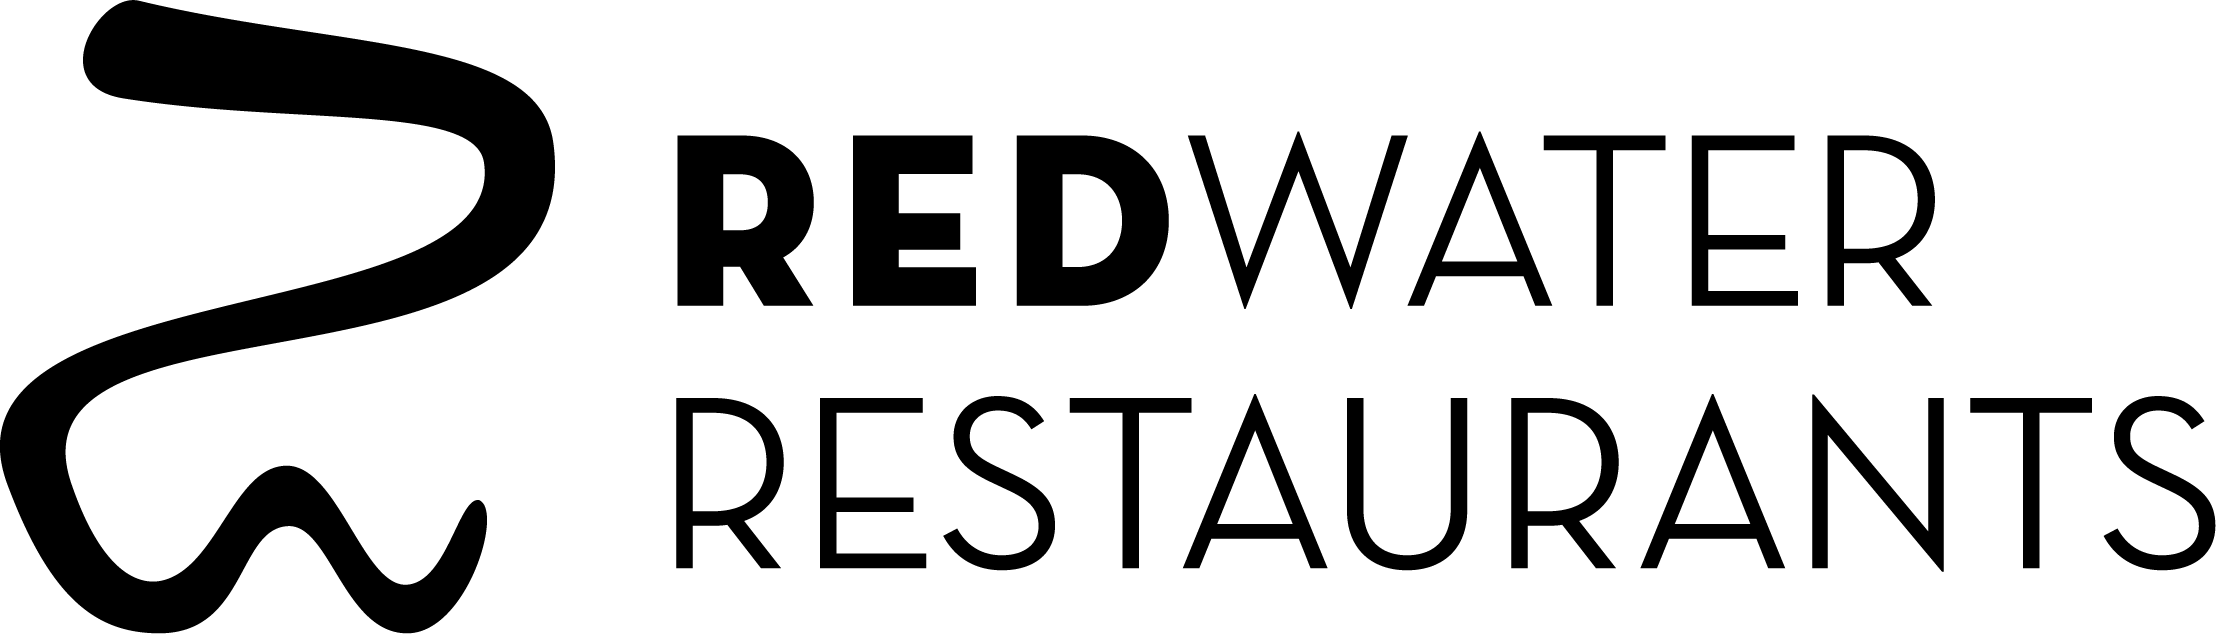 RedWater Restaurants Logo Black